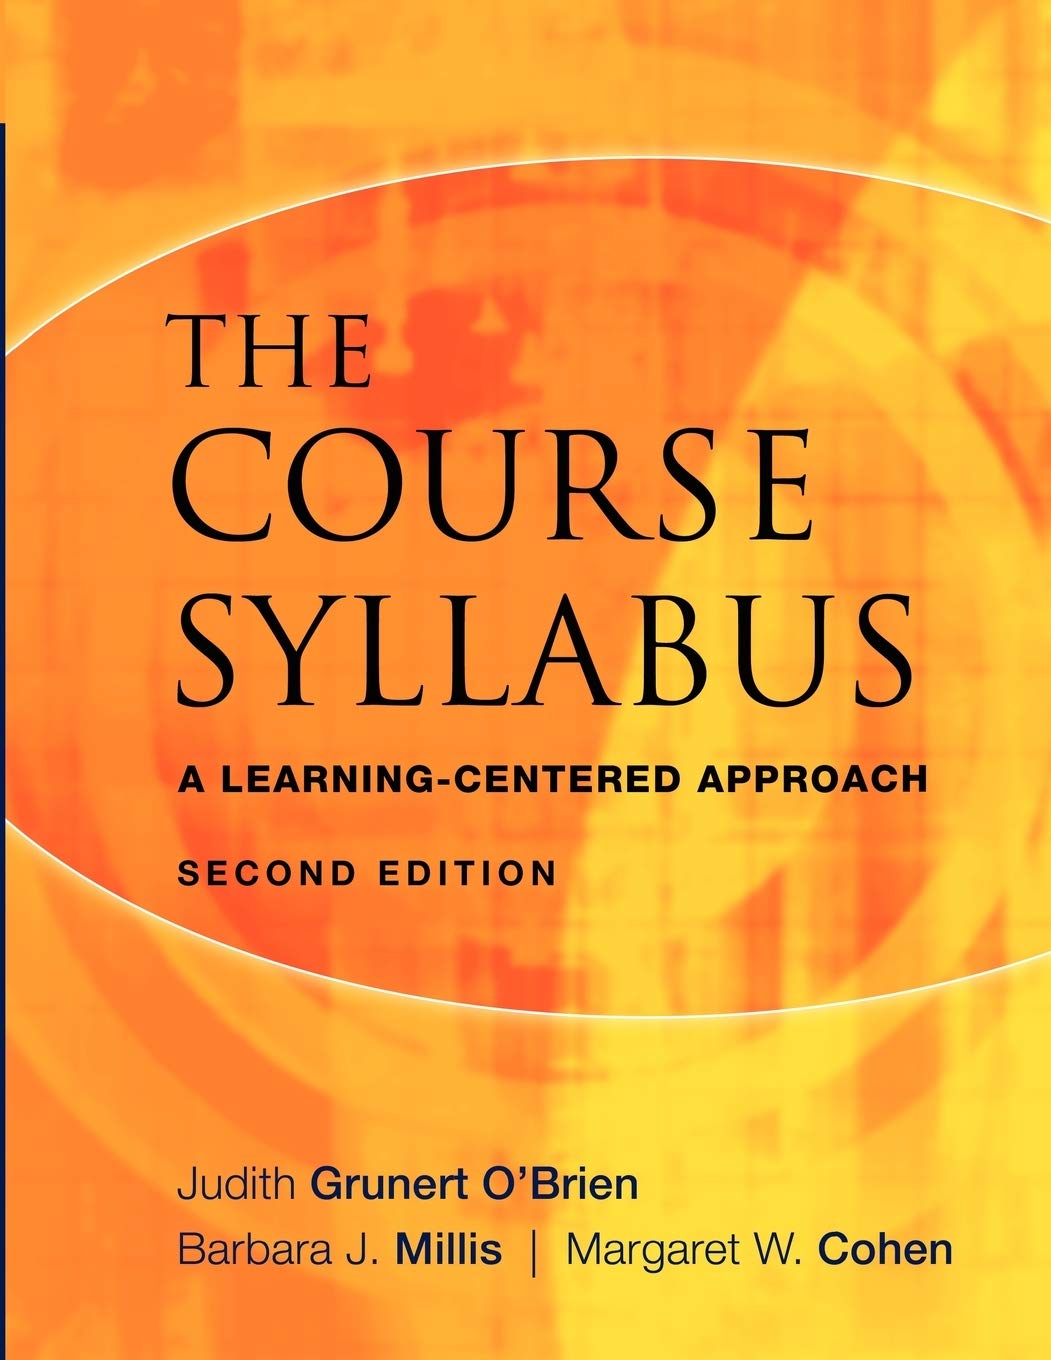 Course syllabus and pen